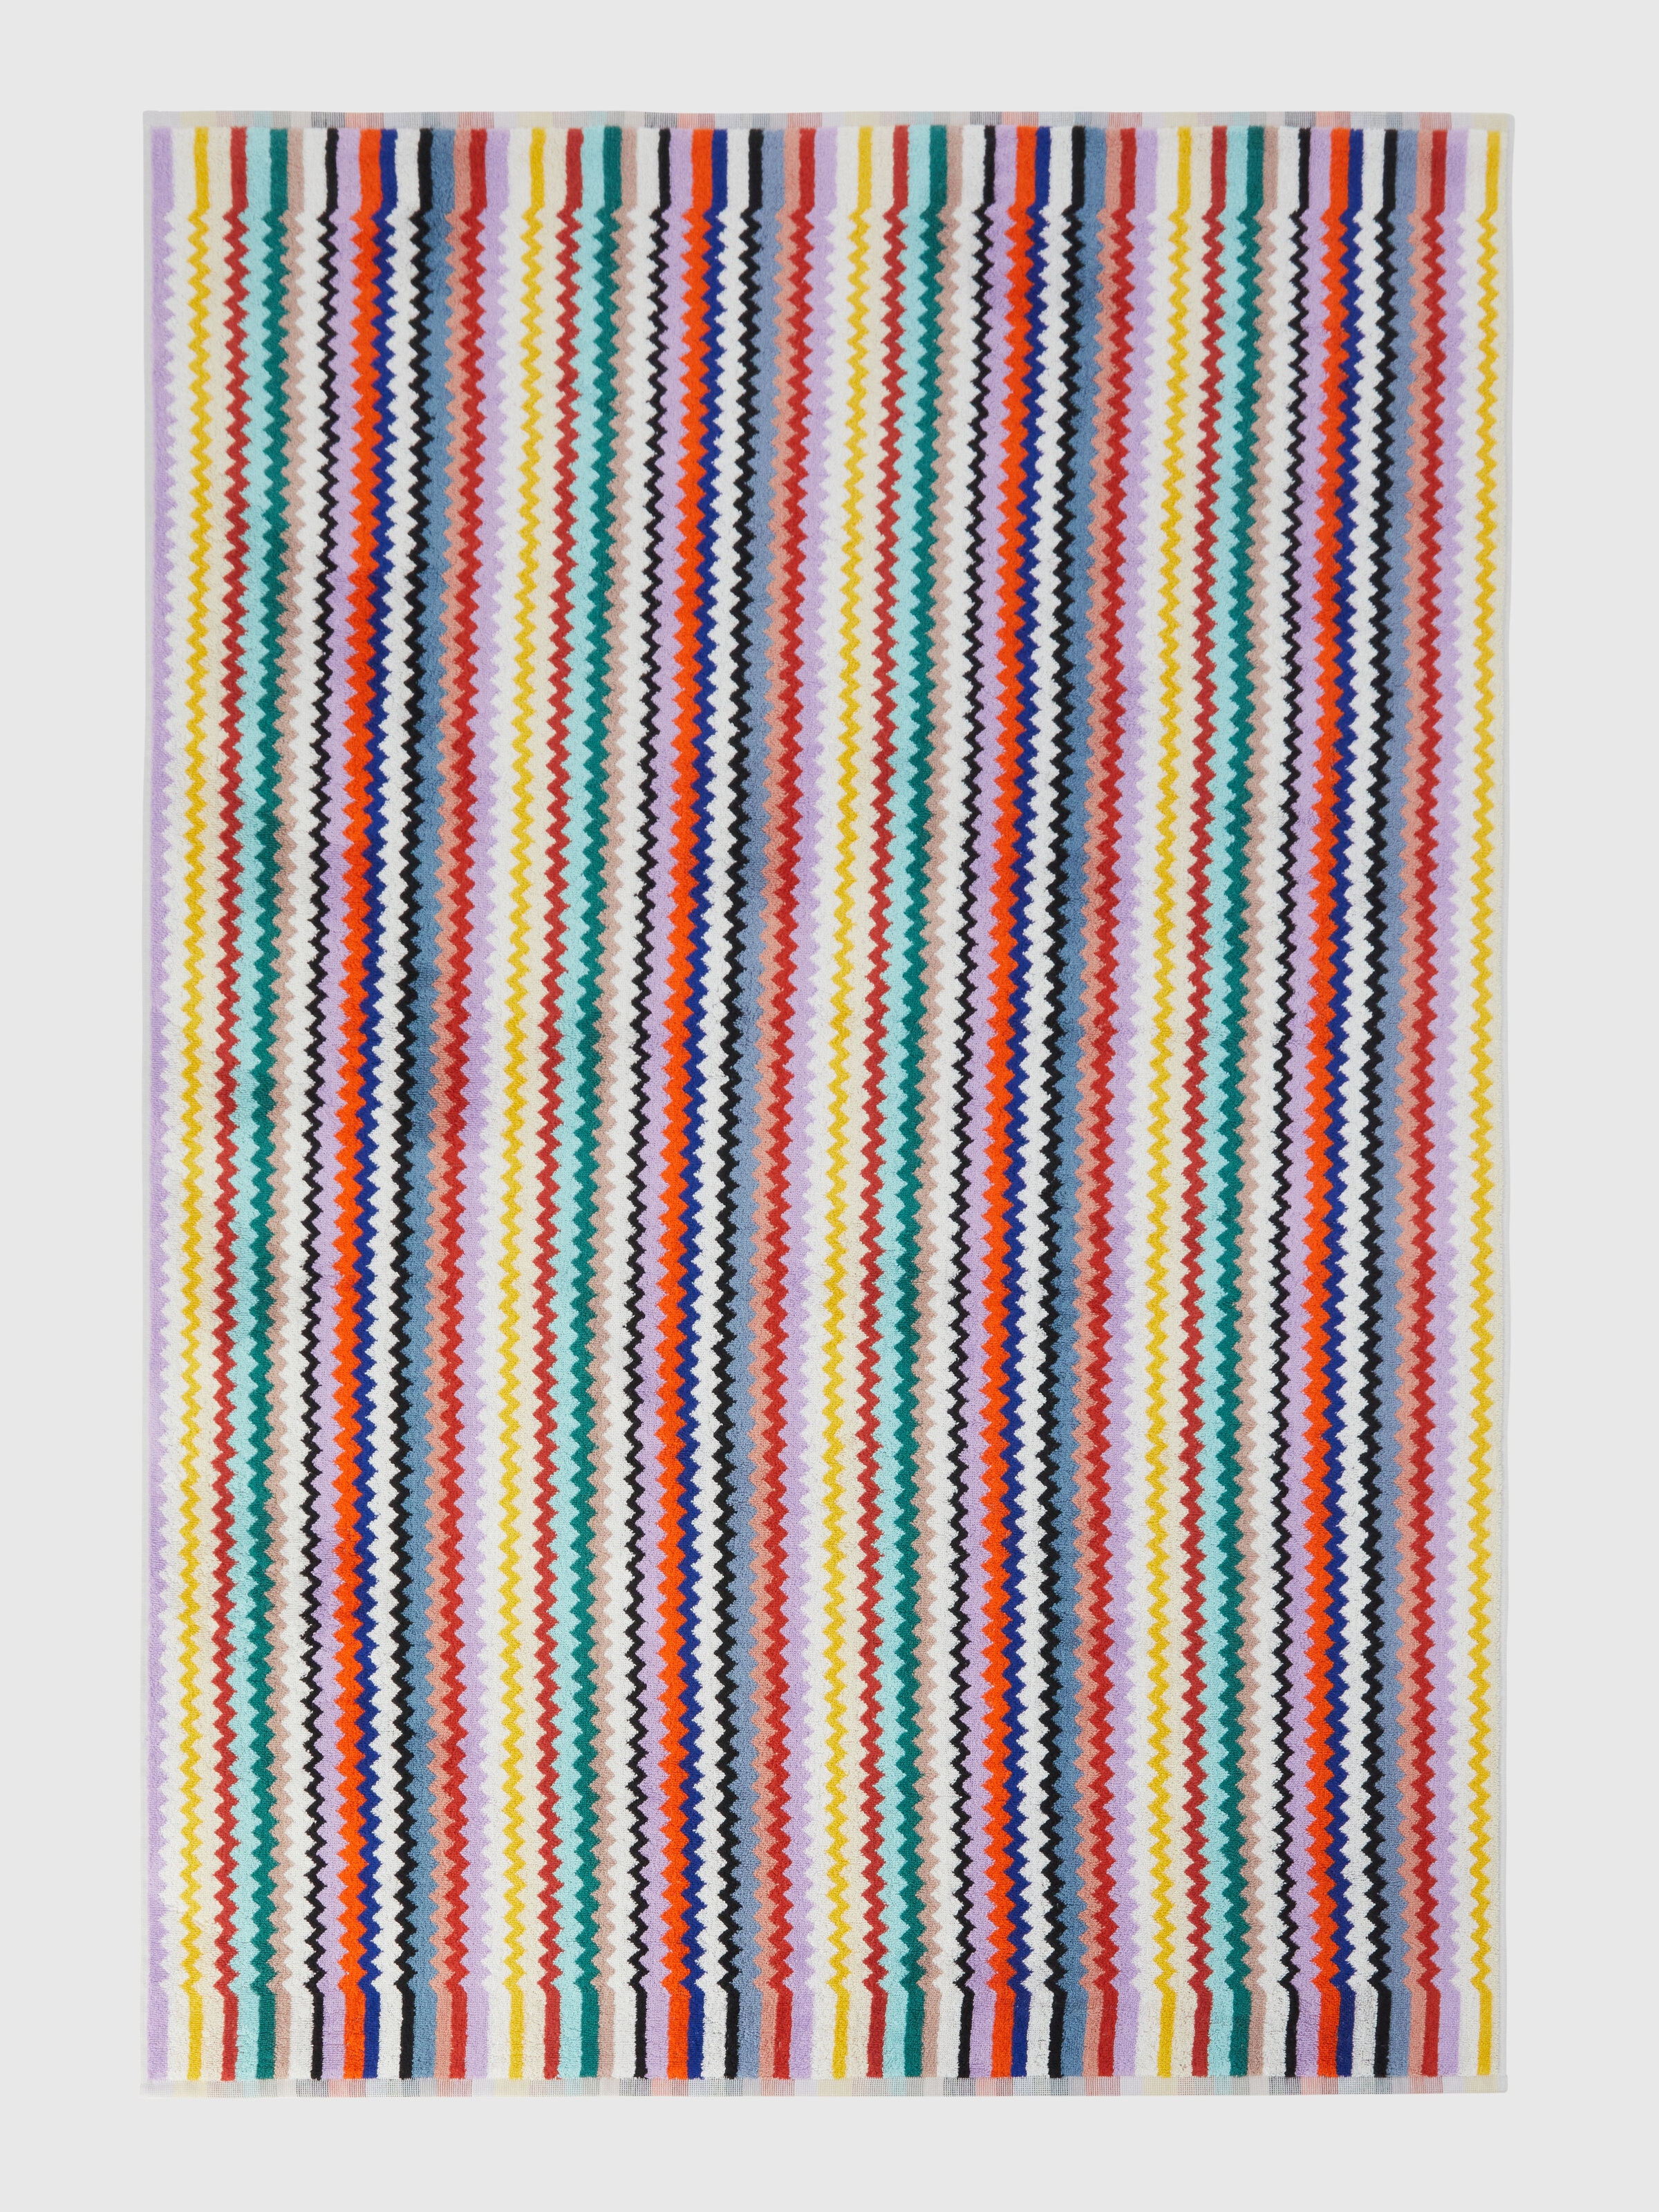 Riverbero, Badetuch 150x100 cm aus Baumwollfrottee mit Zickzackmuster , Mehrfarbig  - 1